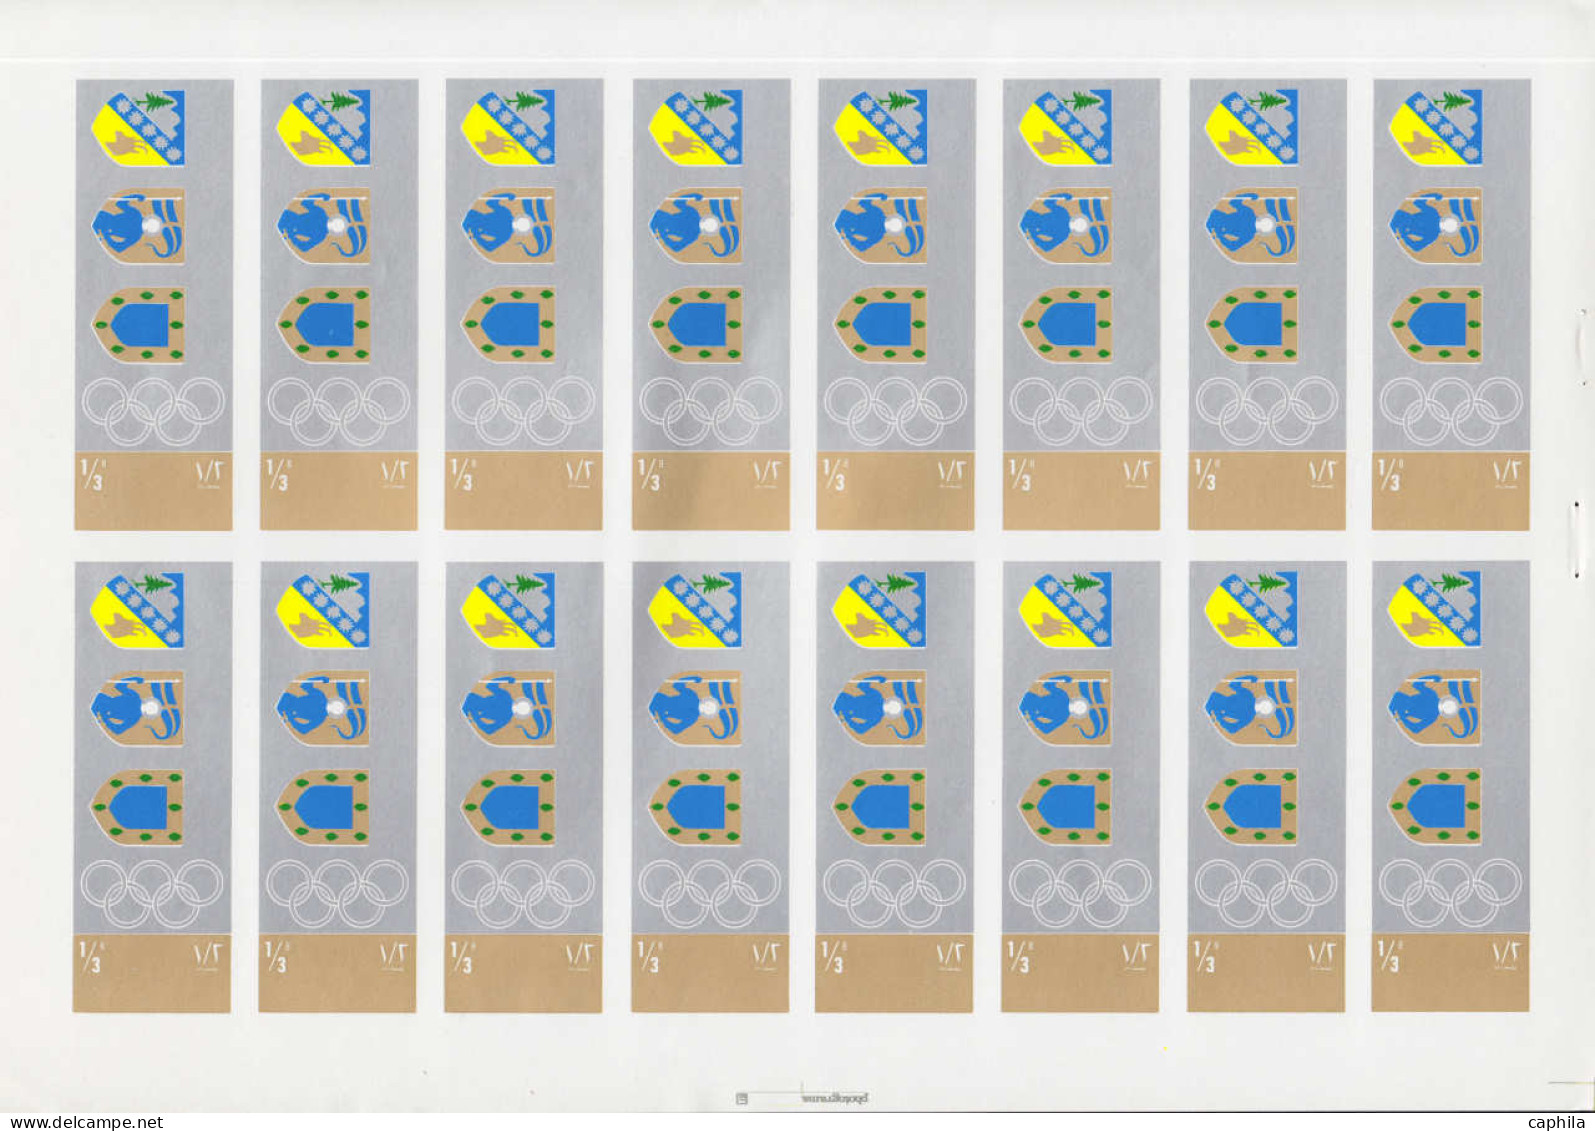 ESS YEMEN - Poste - Michel 818 + 819 + 823, série de 3 carnets contenant chacun 4 feuillets de 16 essais + feuillet de 1